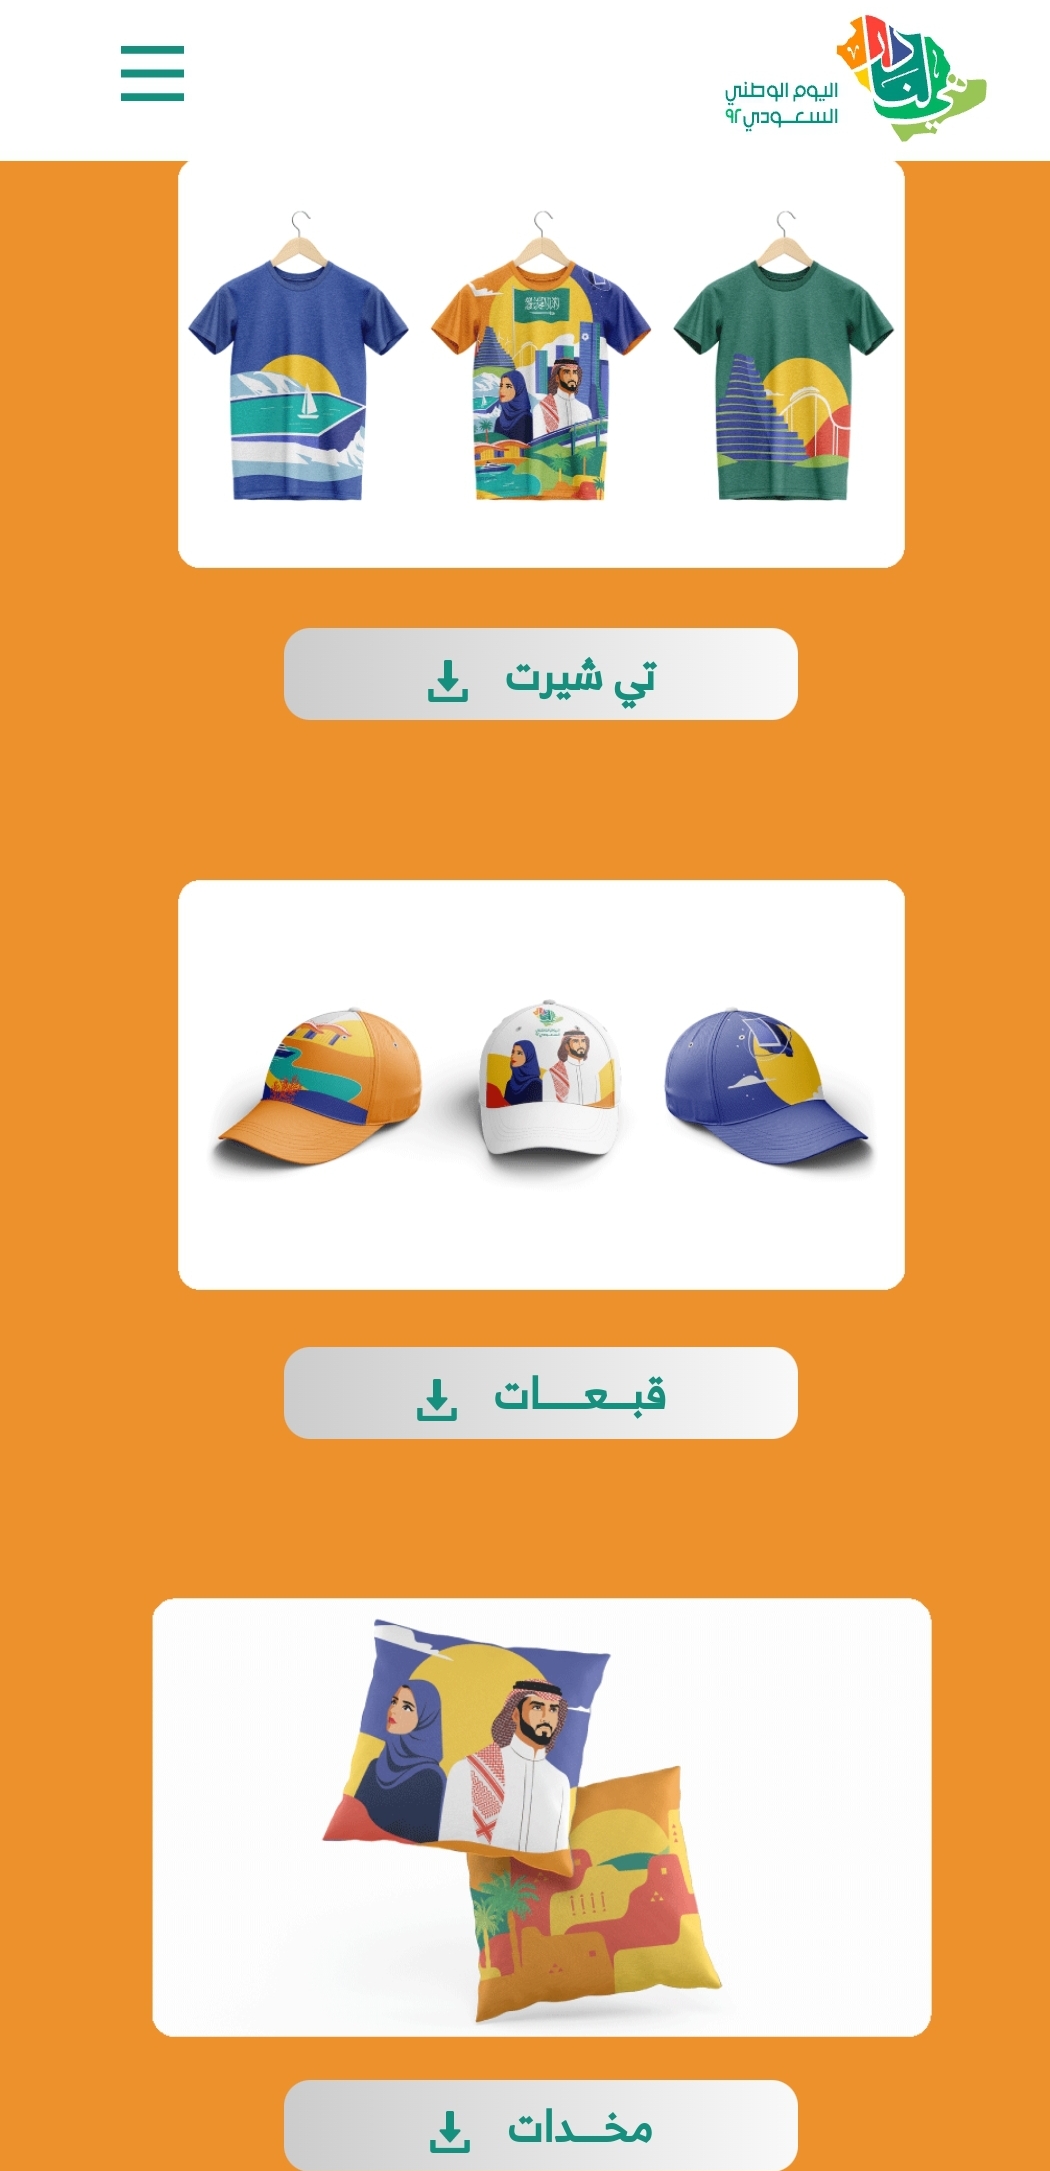 تحميل تصميم قبعات وتيشرت ودفاتر اليوم الوطني السعودي 92